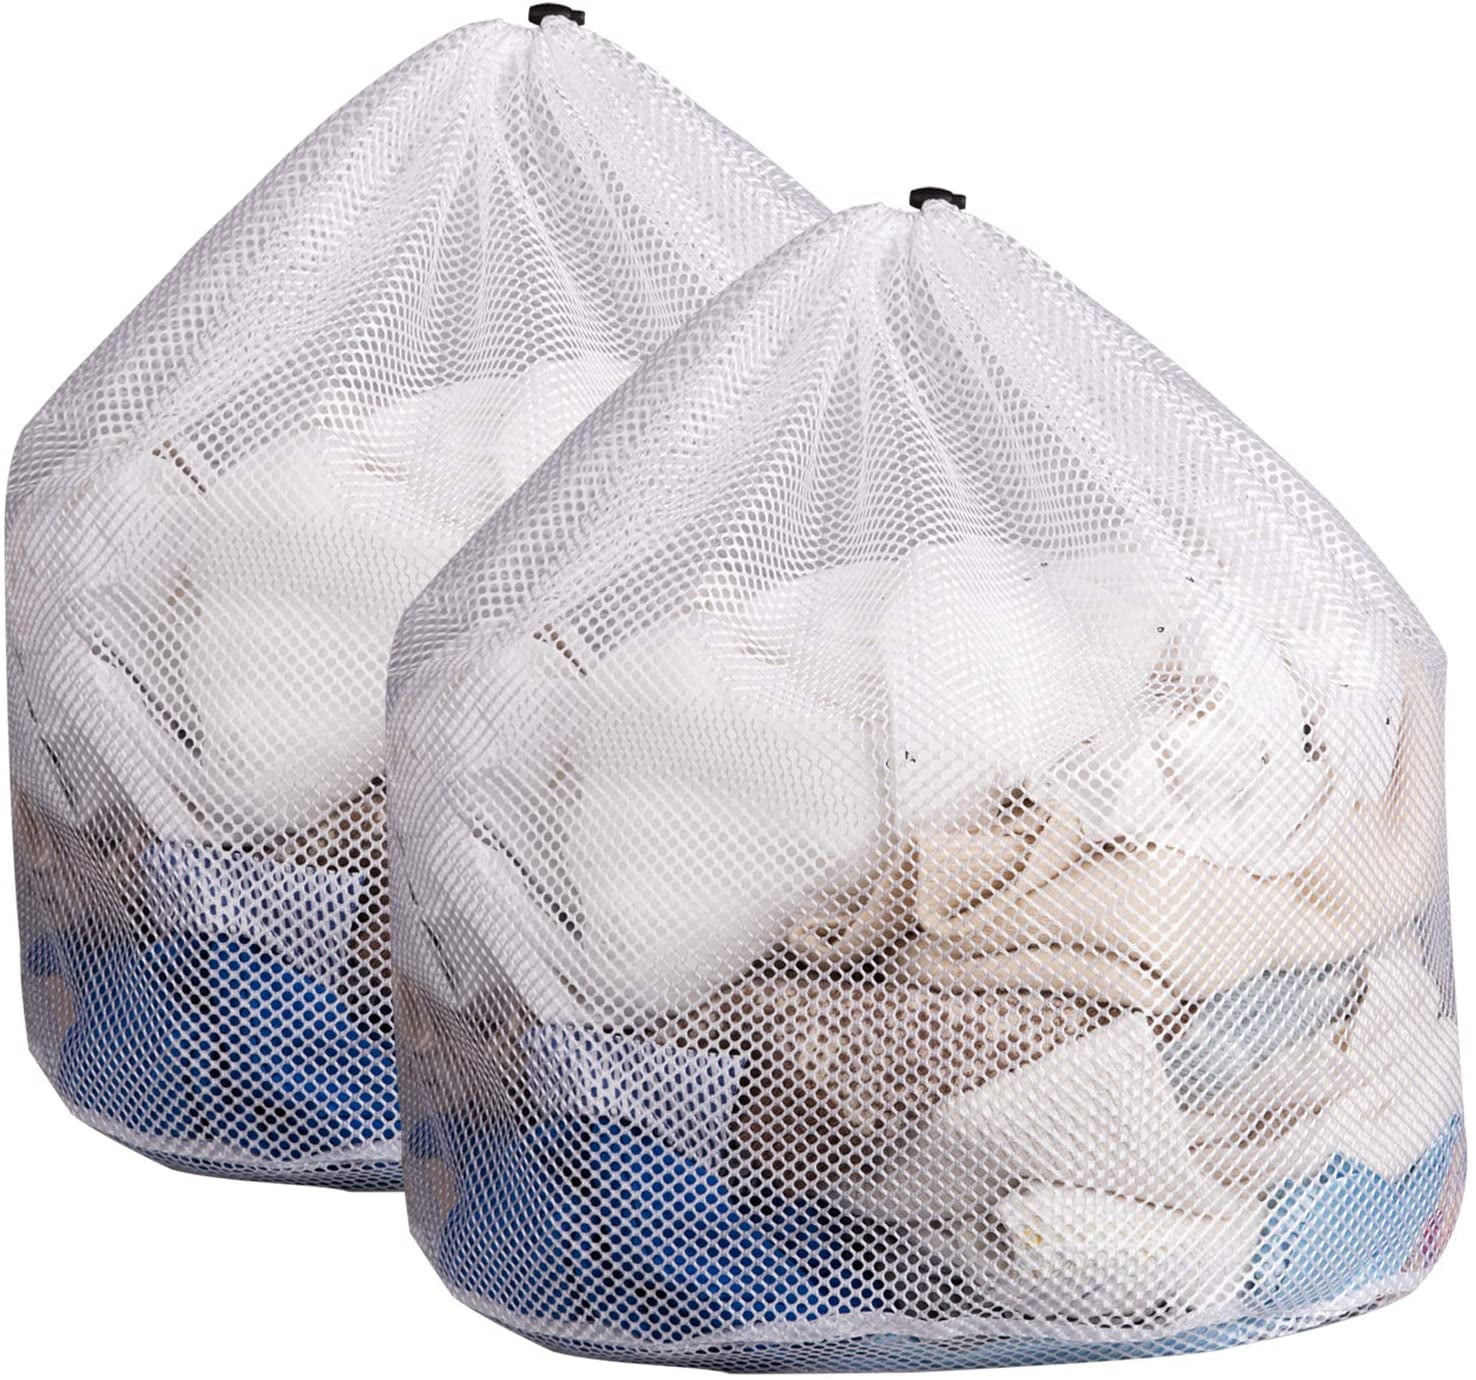 S,M,L,XL Details about   Heavy Duty Natural Cotton Canvas Laundry Sack Toy Storage Bag 